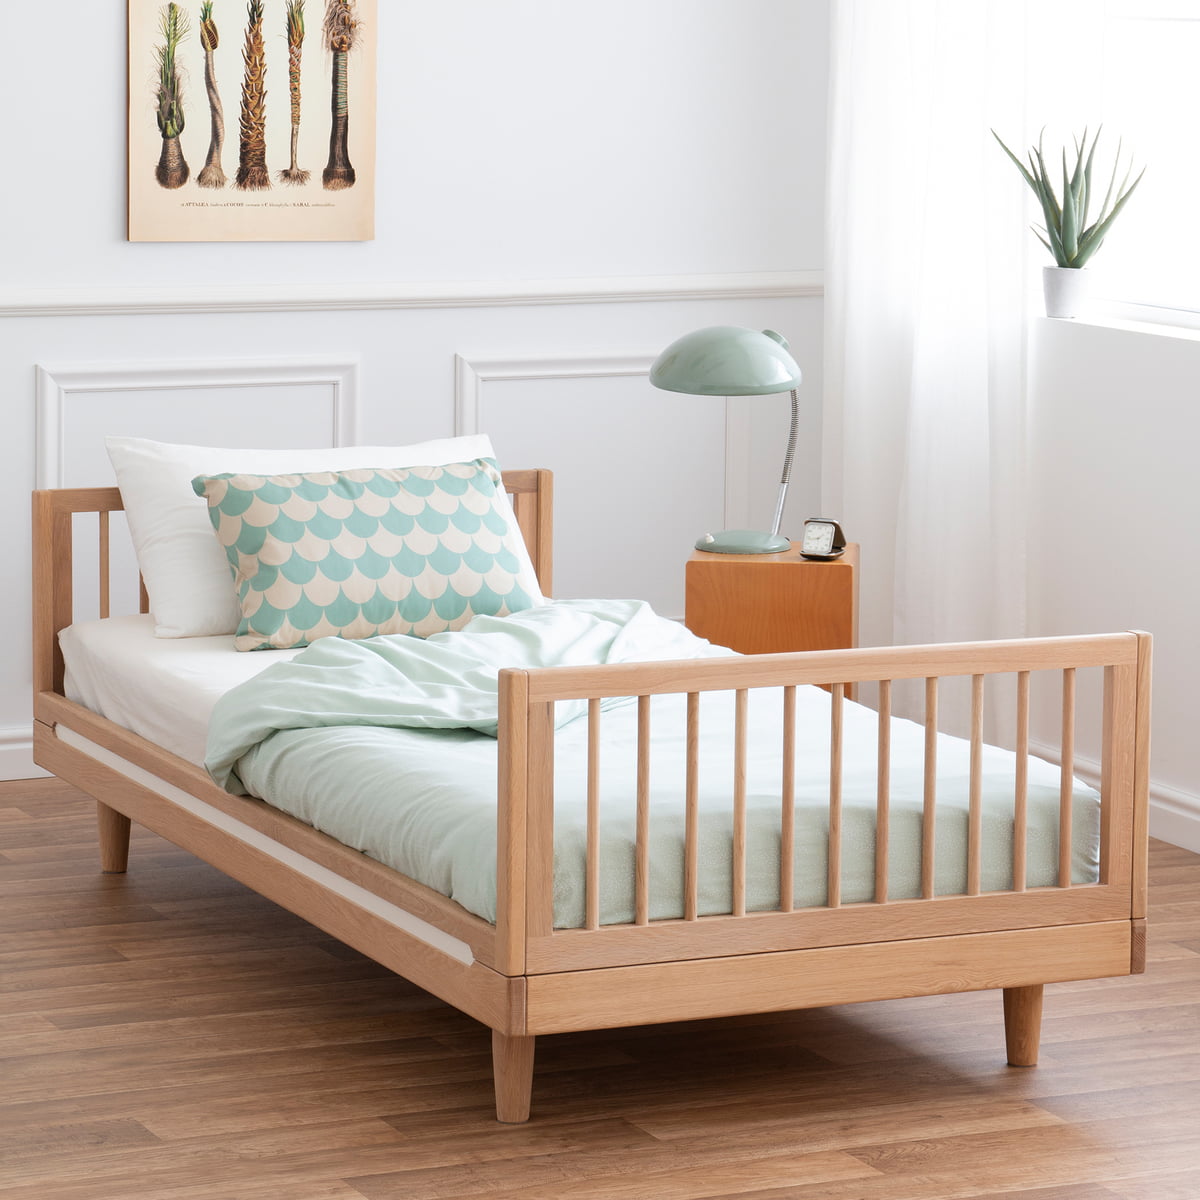 junior bed frame